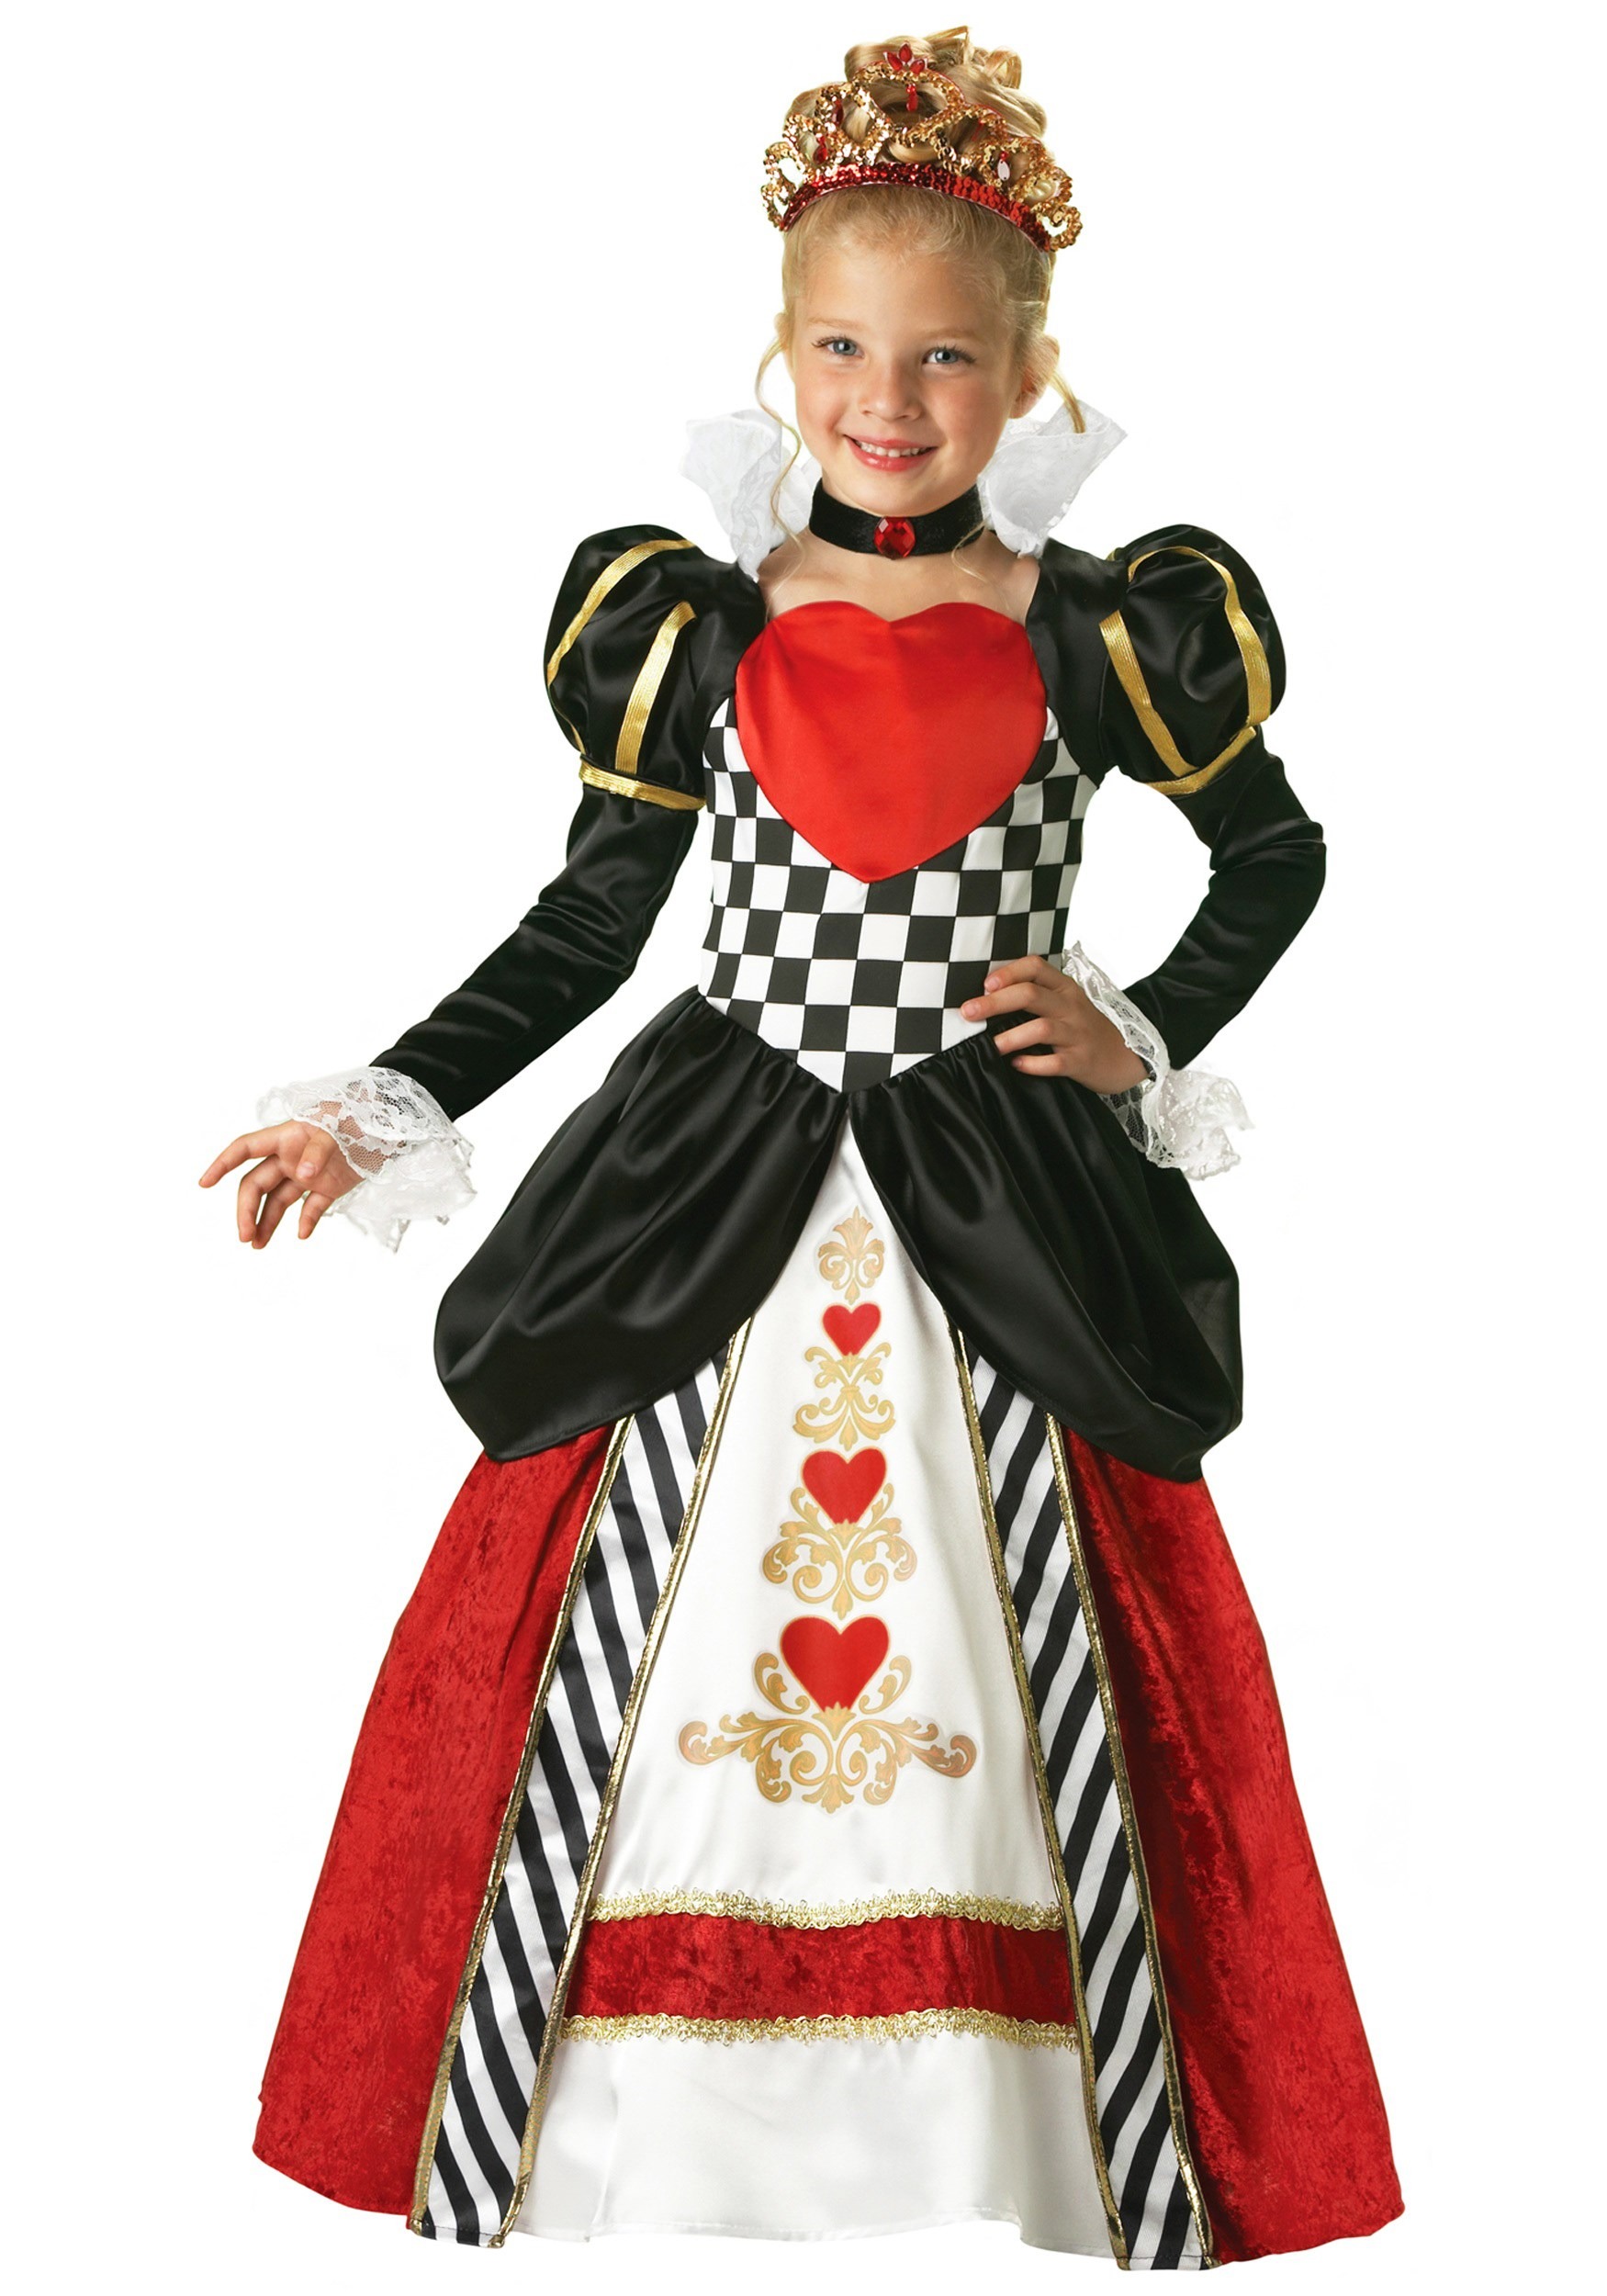 queen of hearts cards alice in wonderland costume